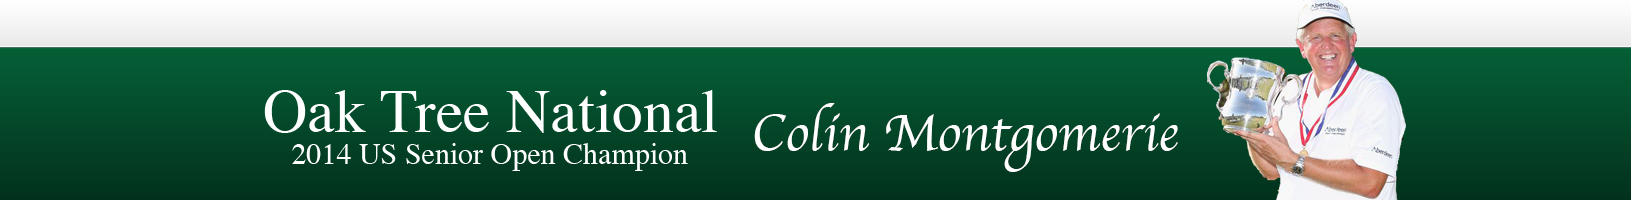 2014 Senior Open Champion Colin Montgomerie